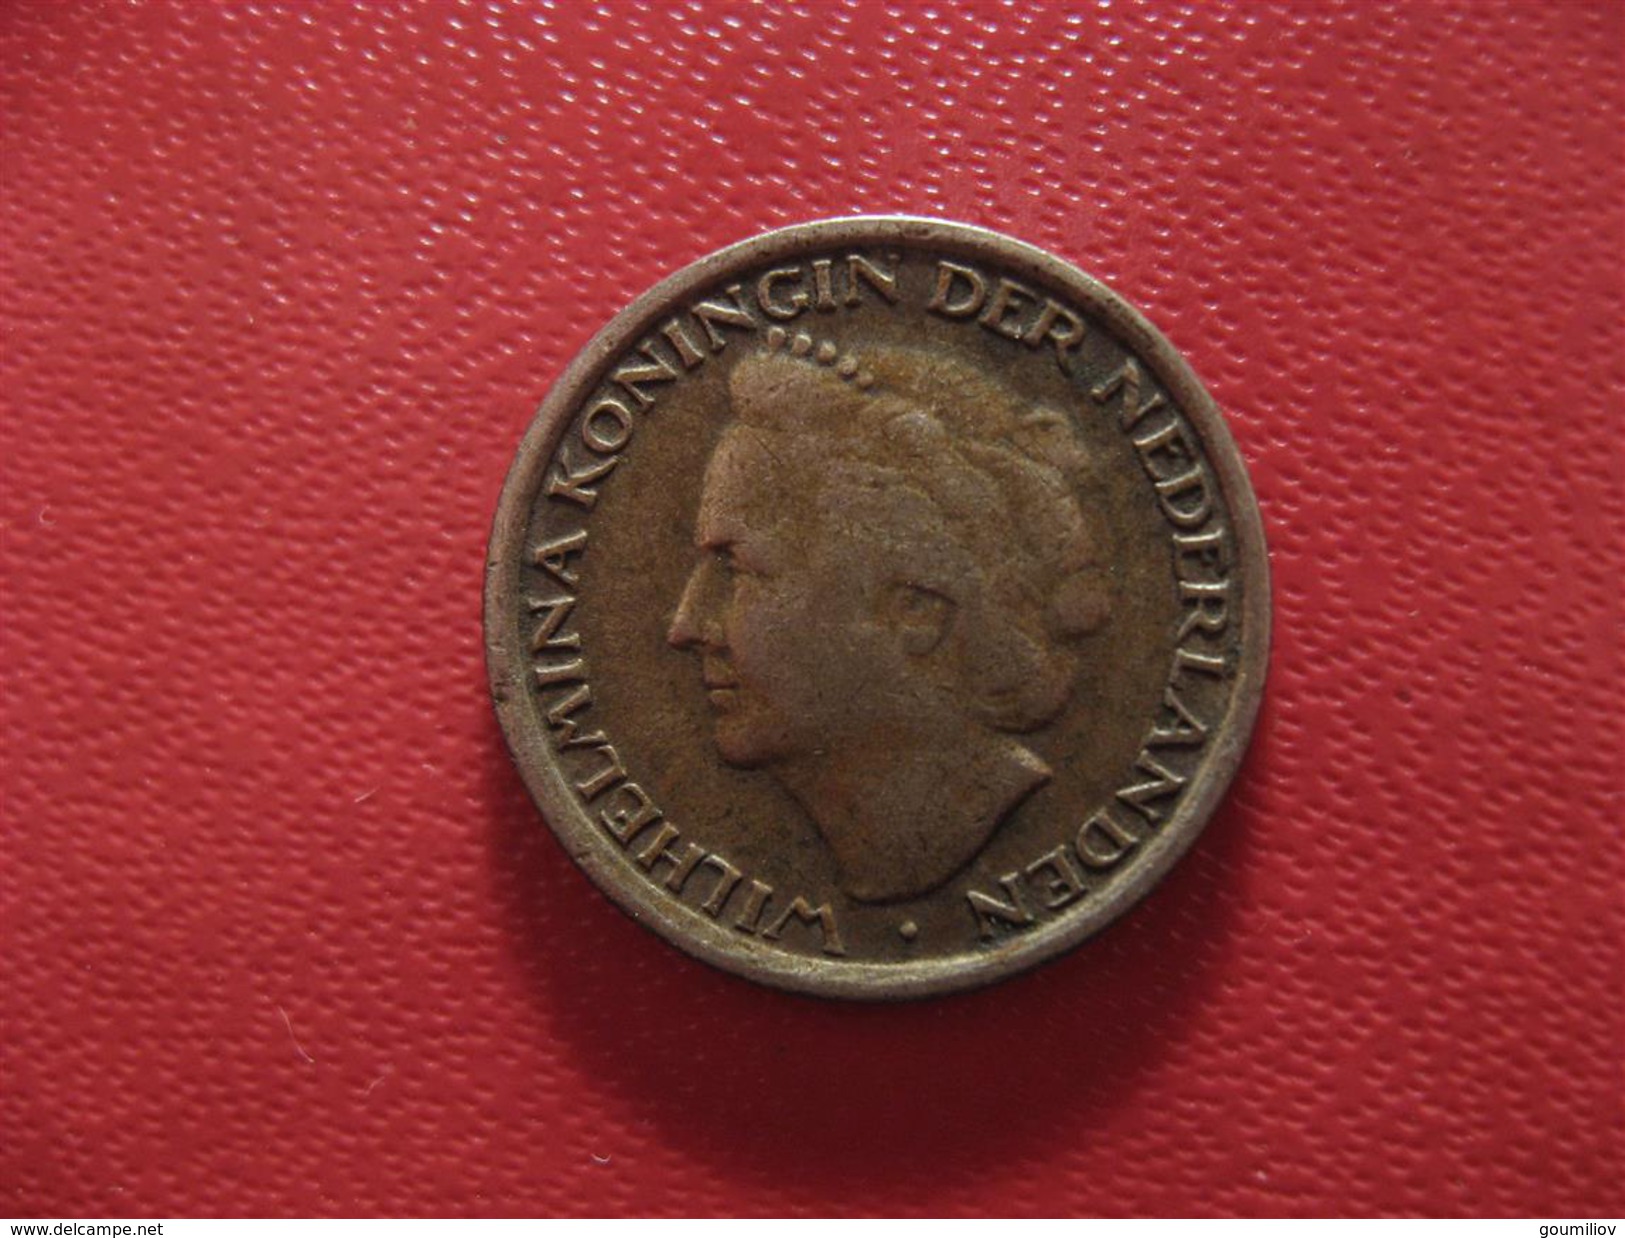 Curacao - Antilles Neerlandaises - 1/10 Gulden 1948 1668 - Curacao